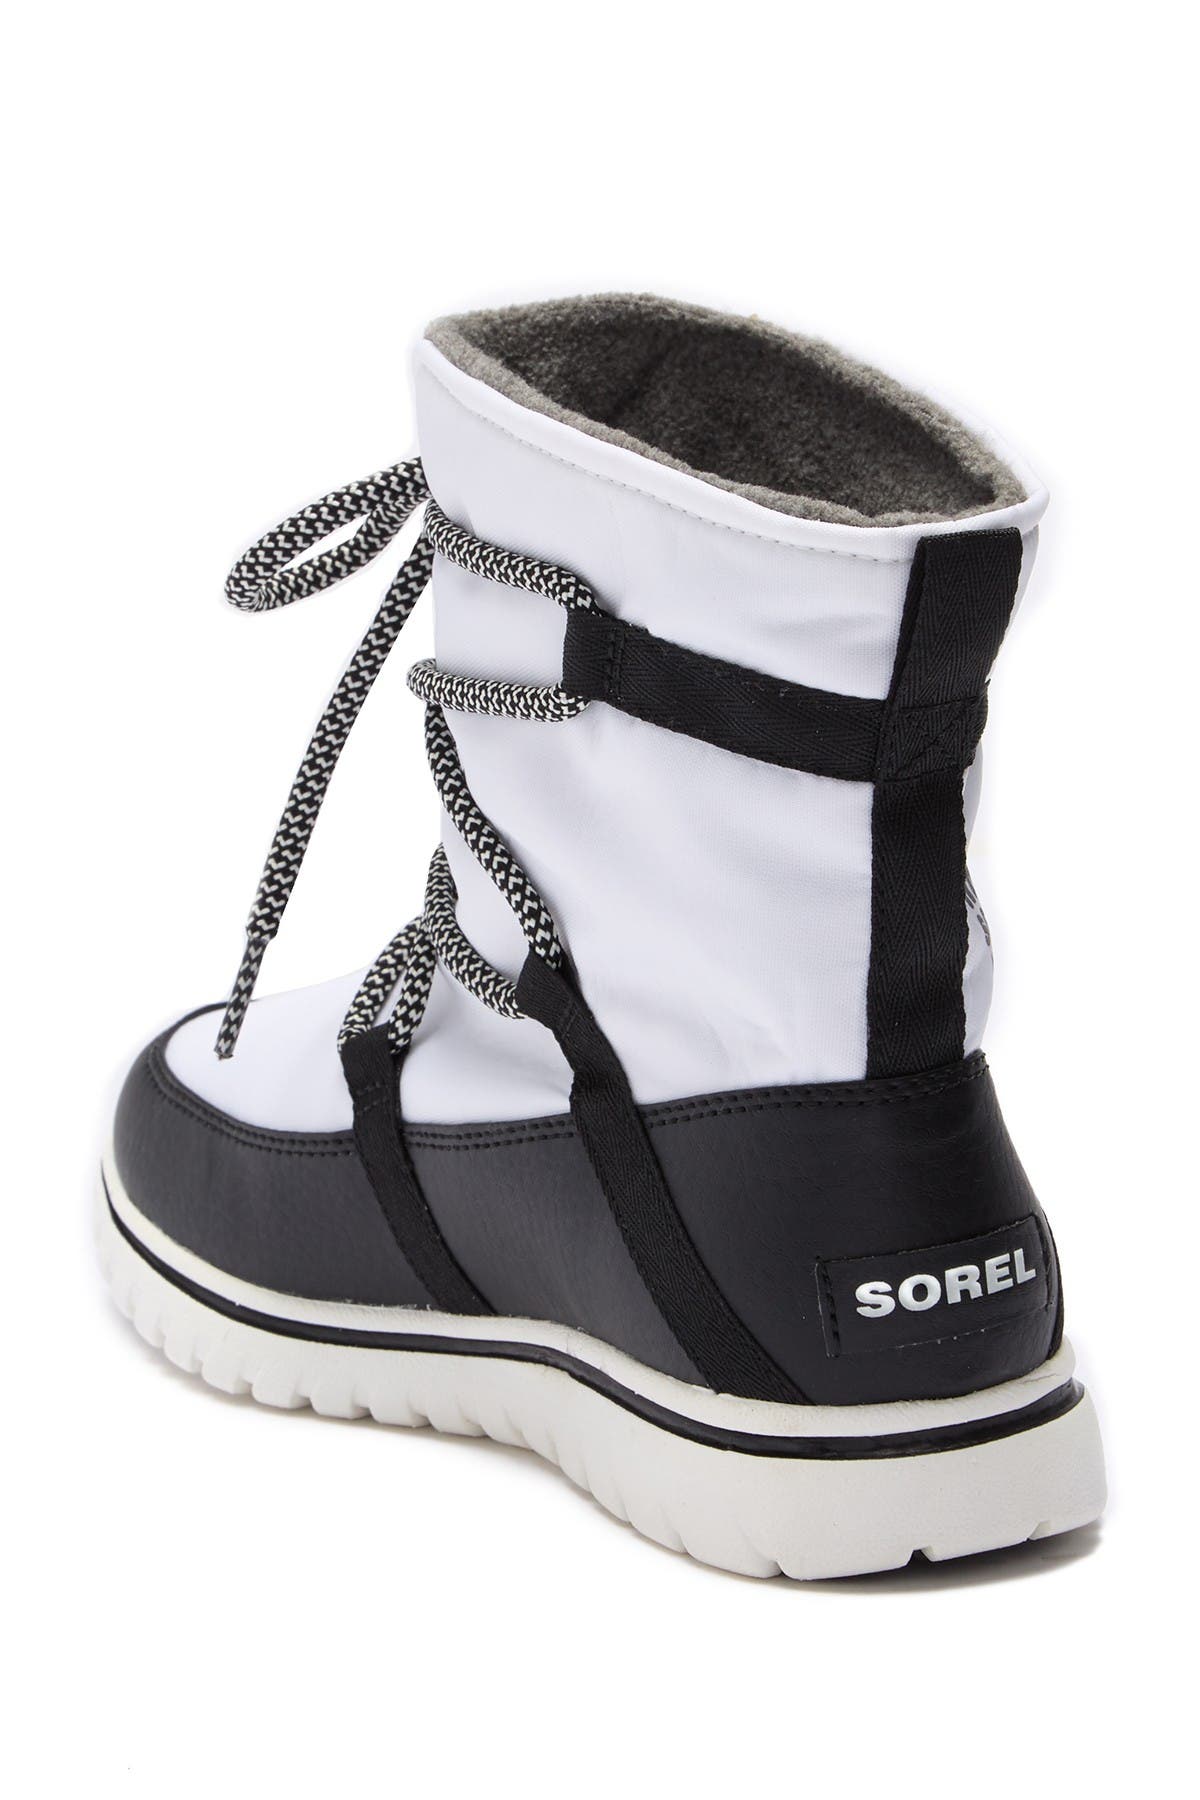 Sorel | Cozy Explorer Waterproof Boot 